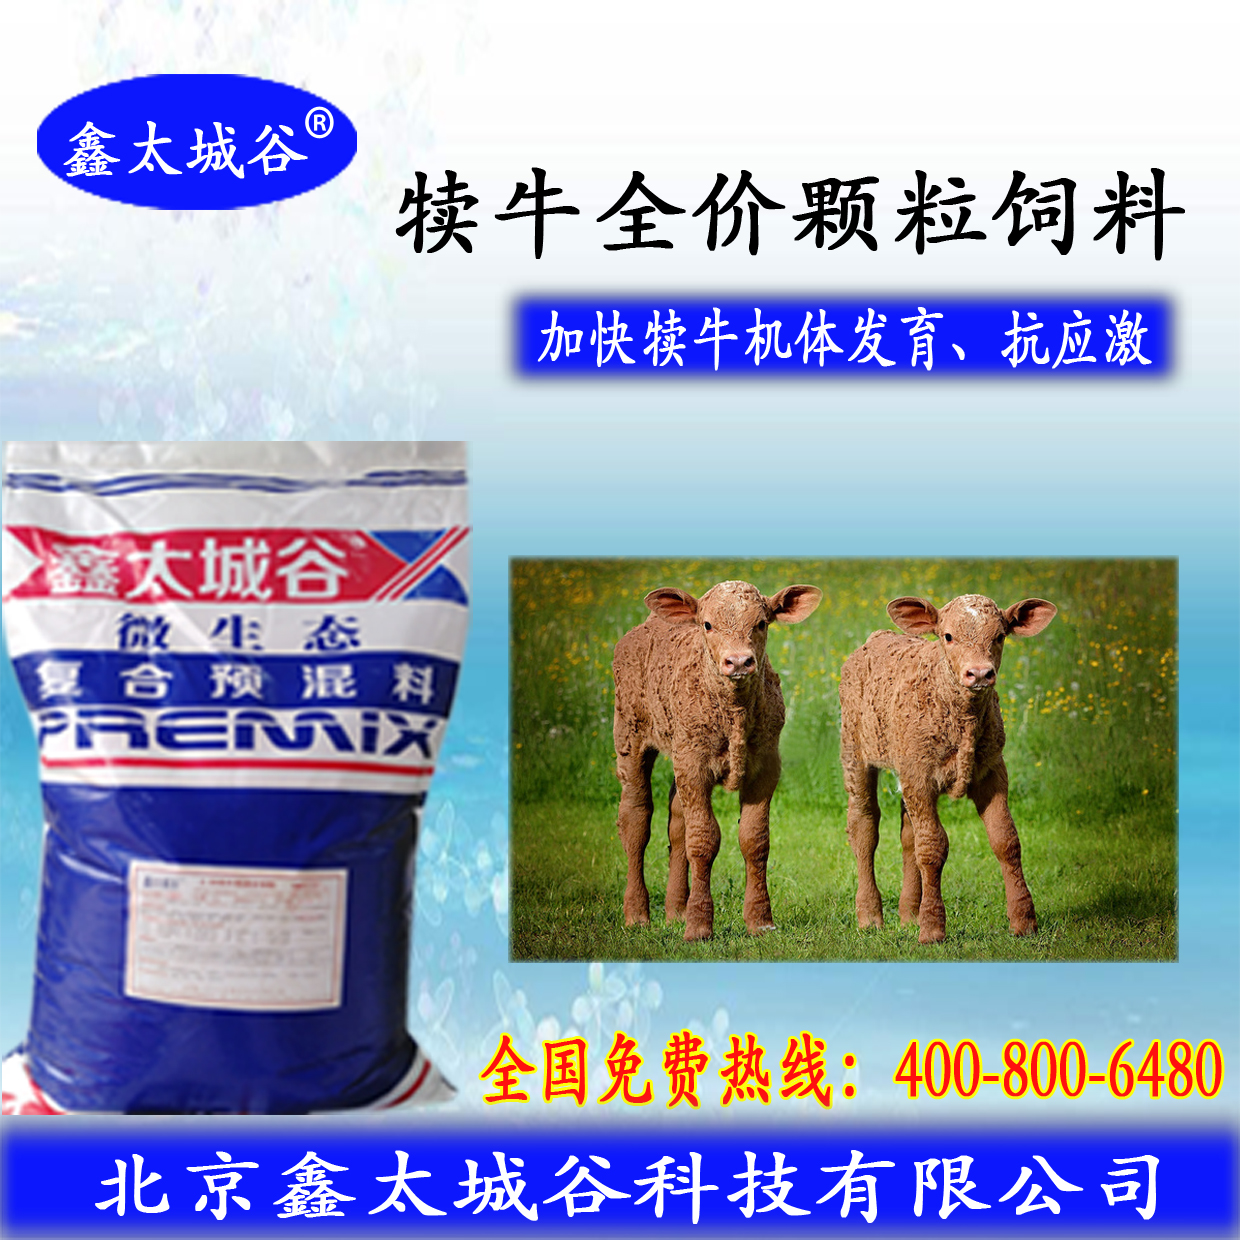 北京鑫太城谷微生态型开张骨架的犊牛颗粒料